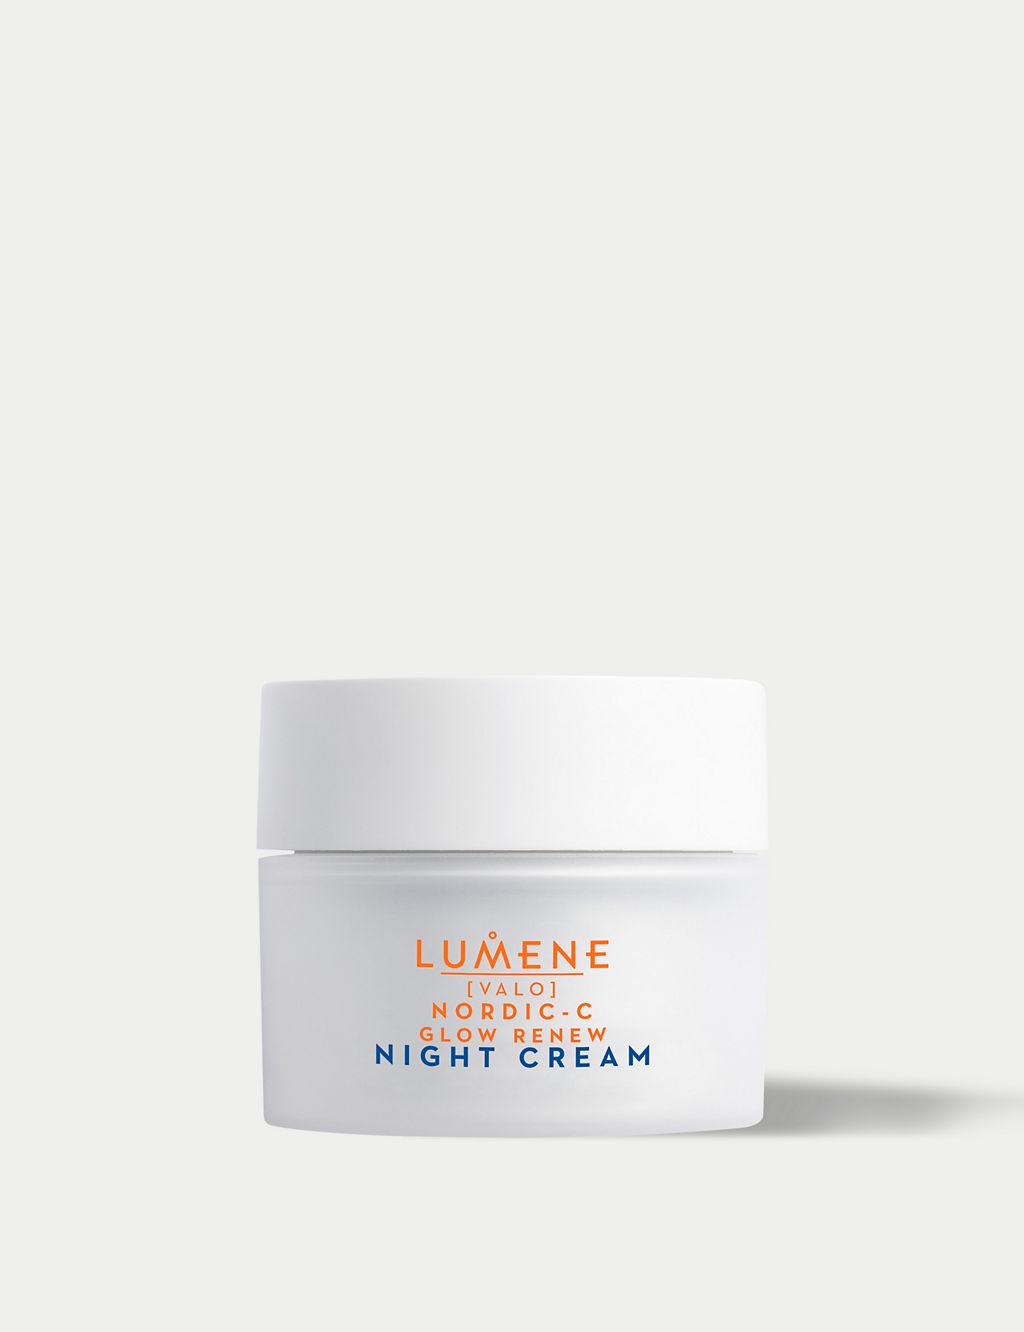 Lumene Nordic-C [VALO] Glow Renew Night Cream 50ml 3 of 3